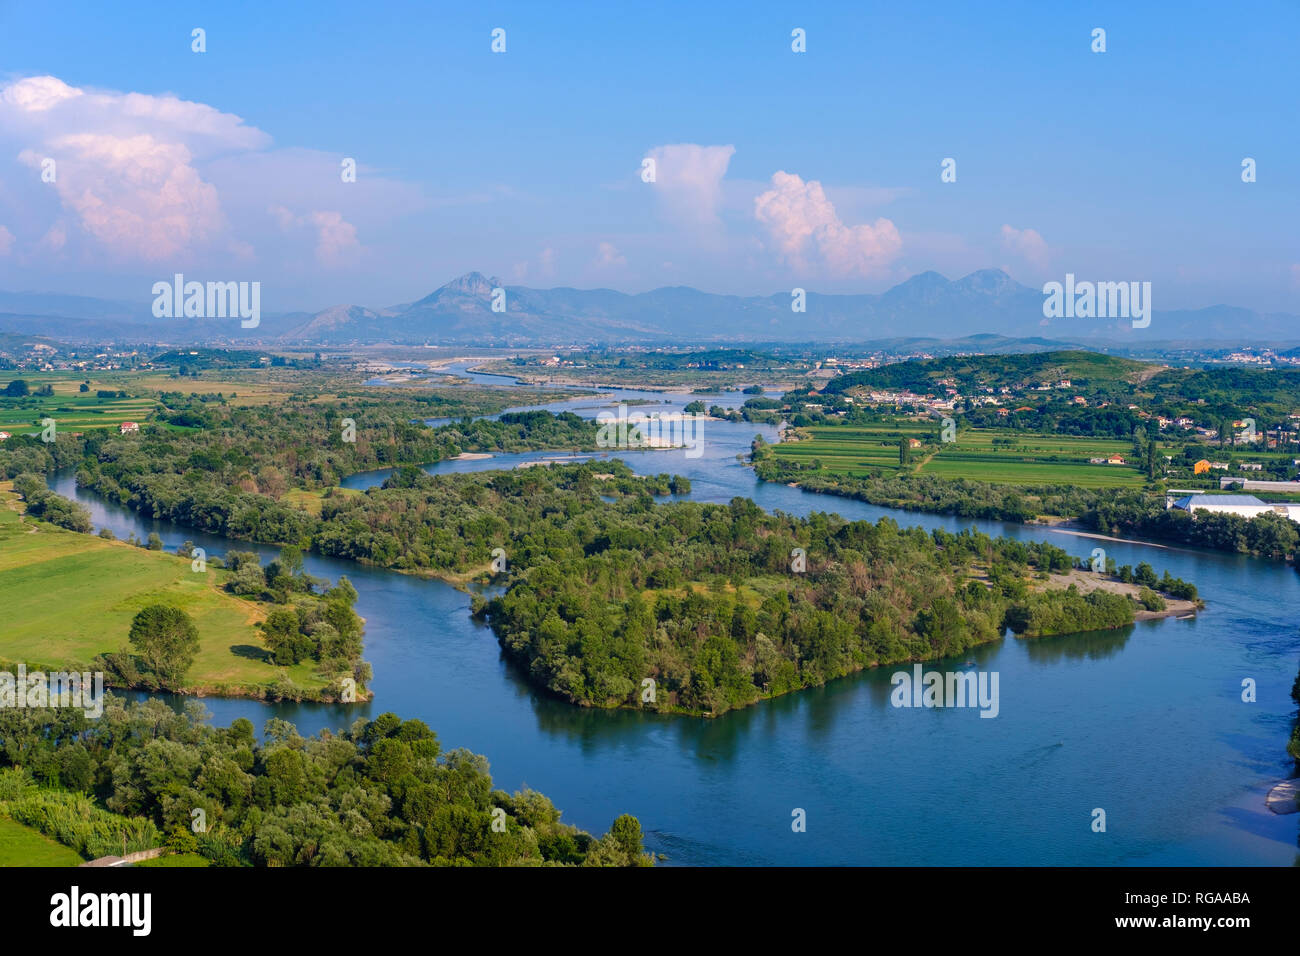 L'Albanie, Shkoder, Drin et Kir rivières, vue depuis le château de Rozafa Banque D'Images